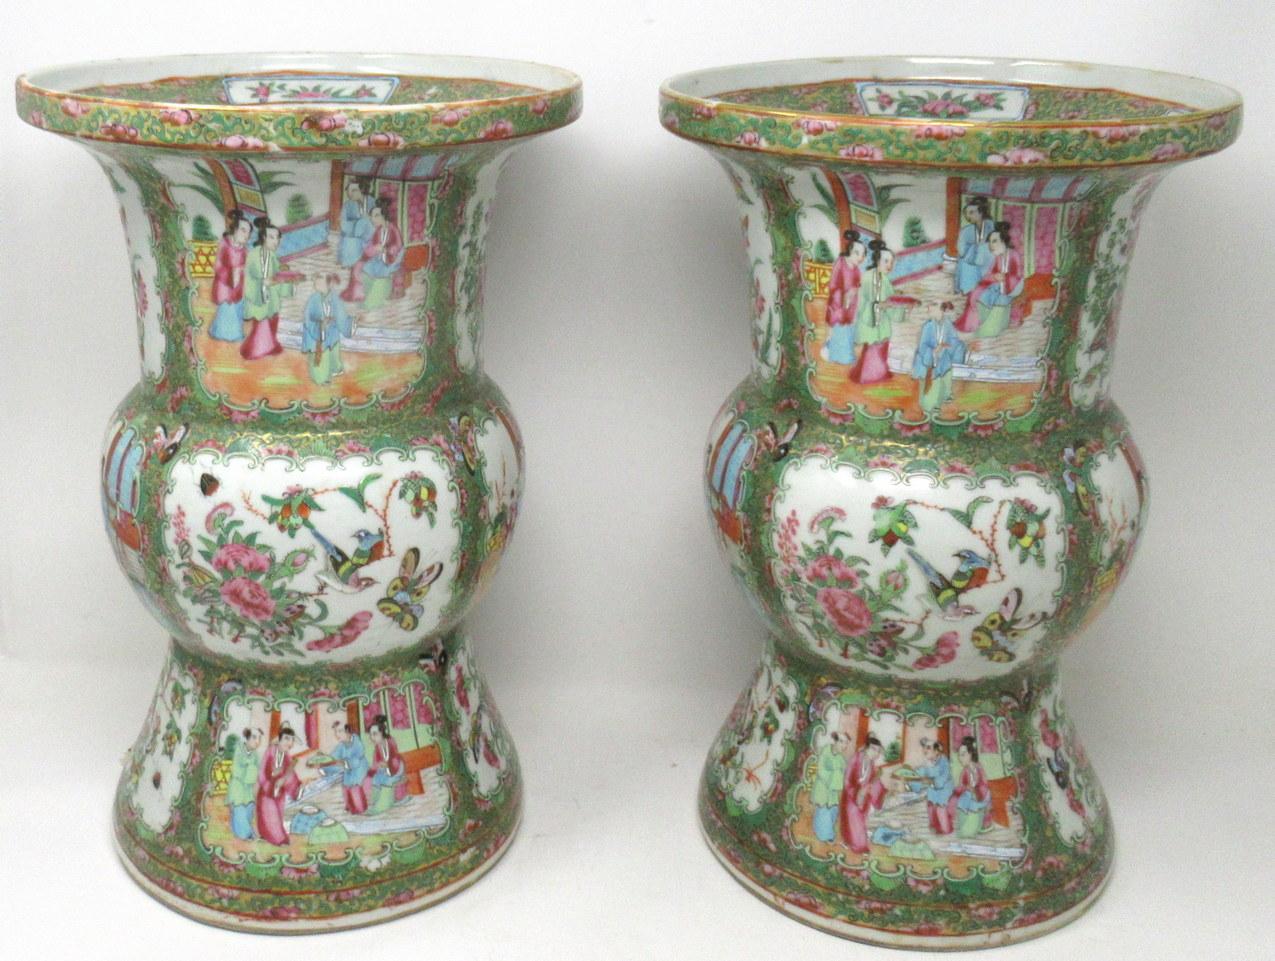 Ein außergewöhnlich feines Paar chinesischer, kantonesischer, handdekorierter Porzellanvasen von seltener Umrissform und recht guten Größenverhältnissen (siehe letztes Bild in situ) aus der Mitte des neunzehnten Jahrhunderts, möglicherweise